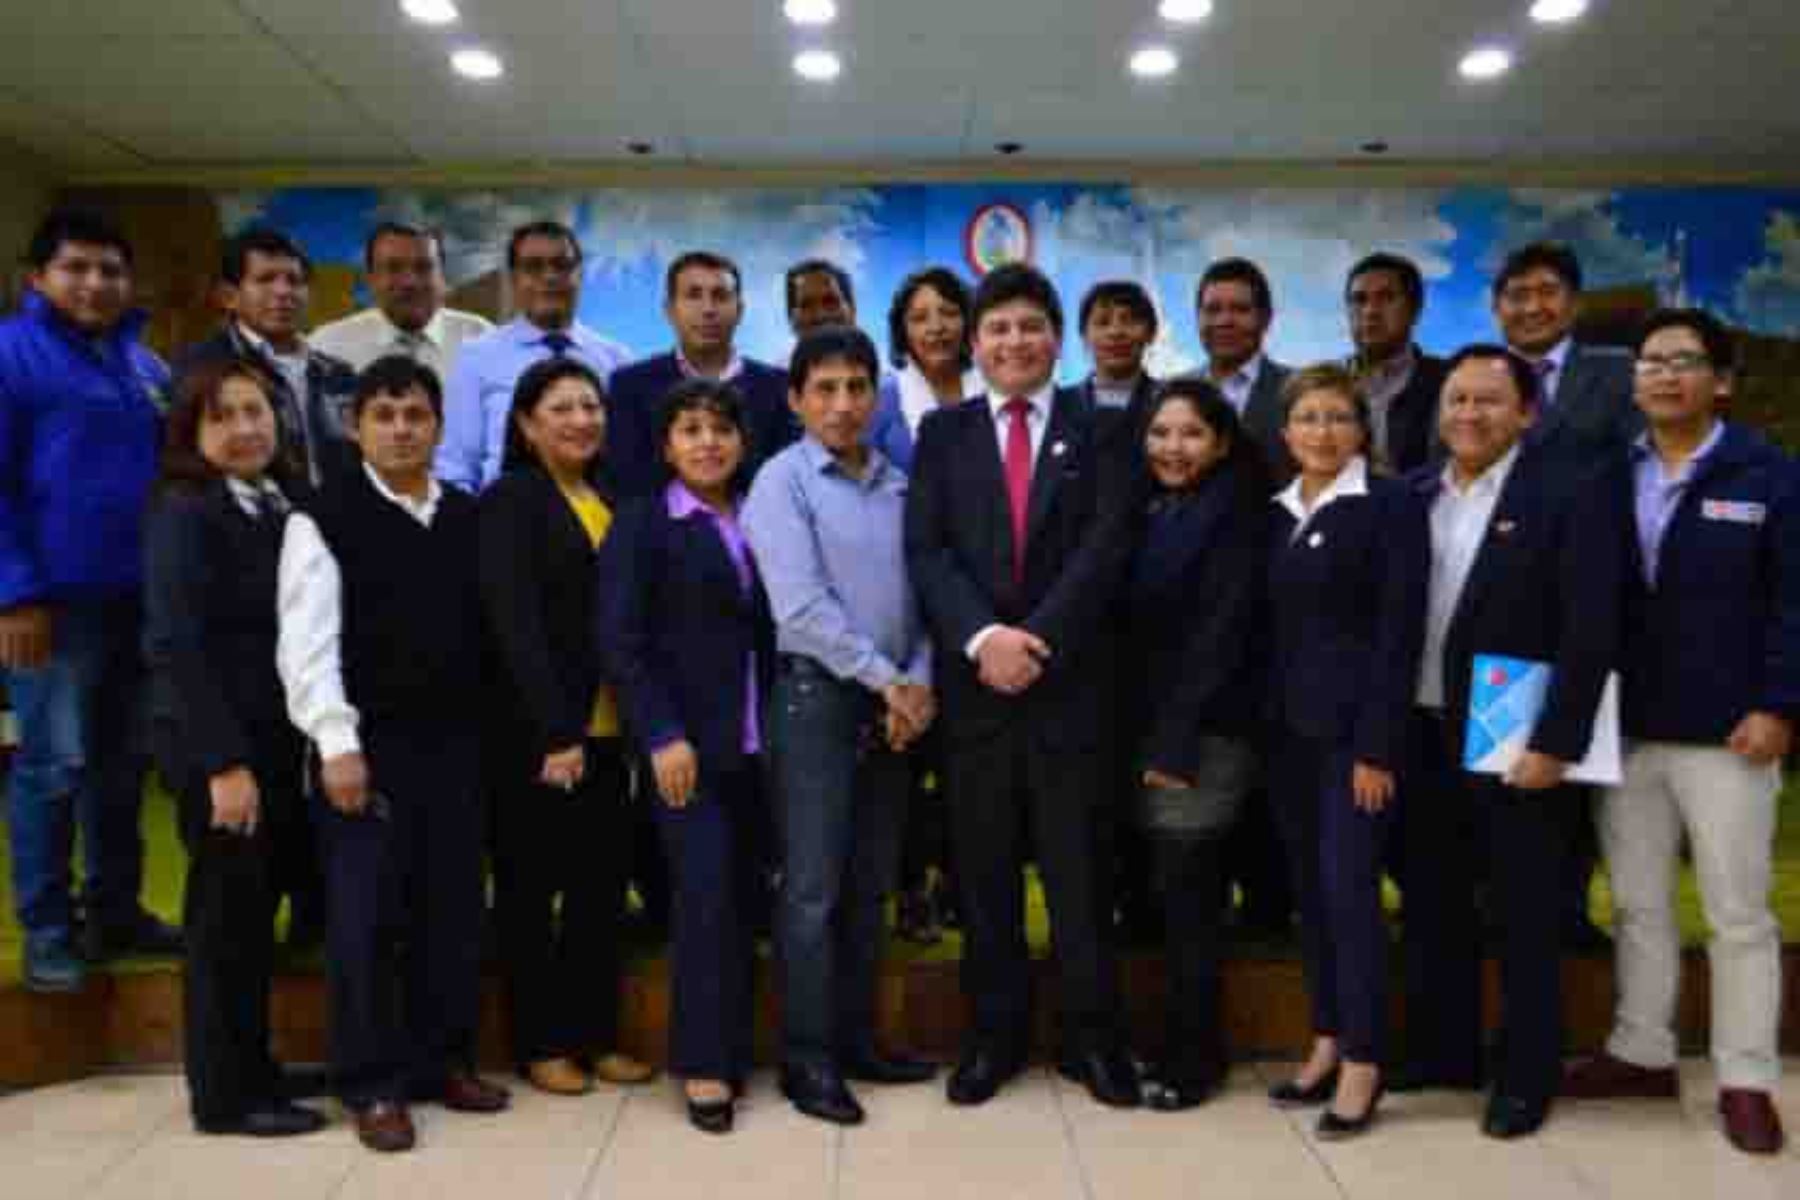 El Gobierno Regional de Ayacucho reconoció oficialmente al Comité Regional de Saneamiento, que estará encargado de la dirección, supervisión y evaluación de la elaboración del Plan Regional de Saneamiento, así como del seguimiento y evaluación de su cumplimiento.